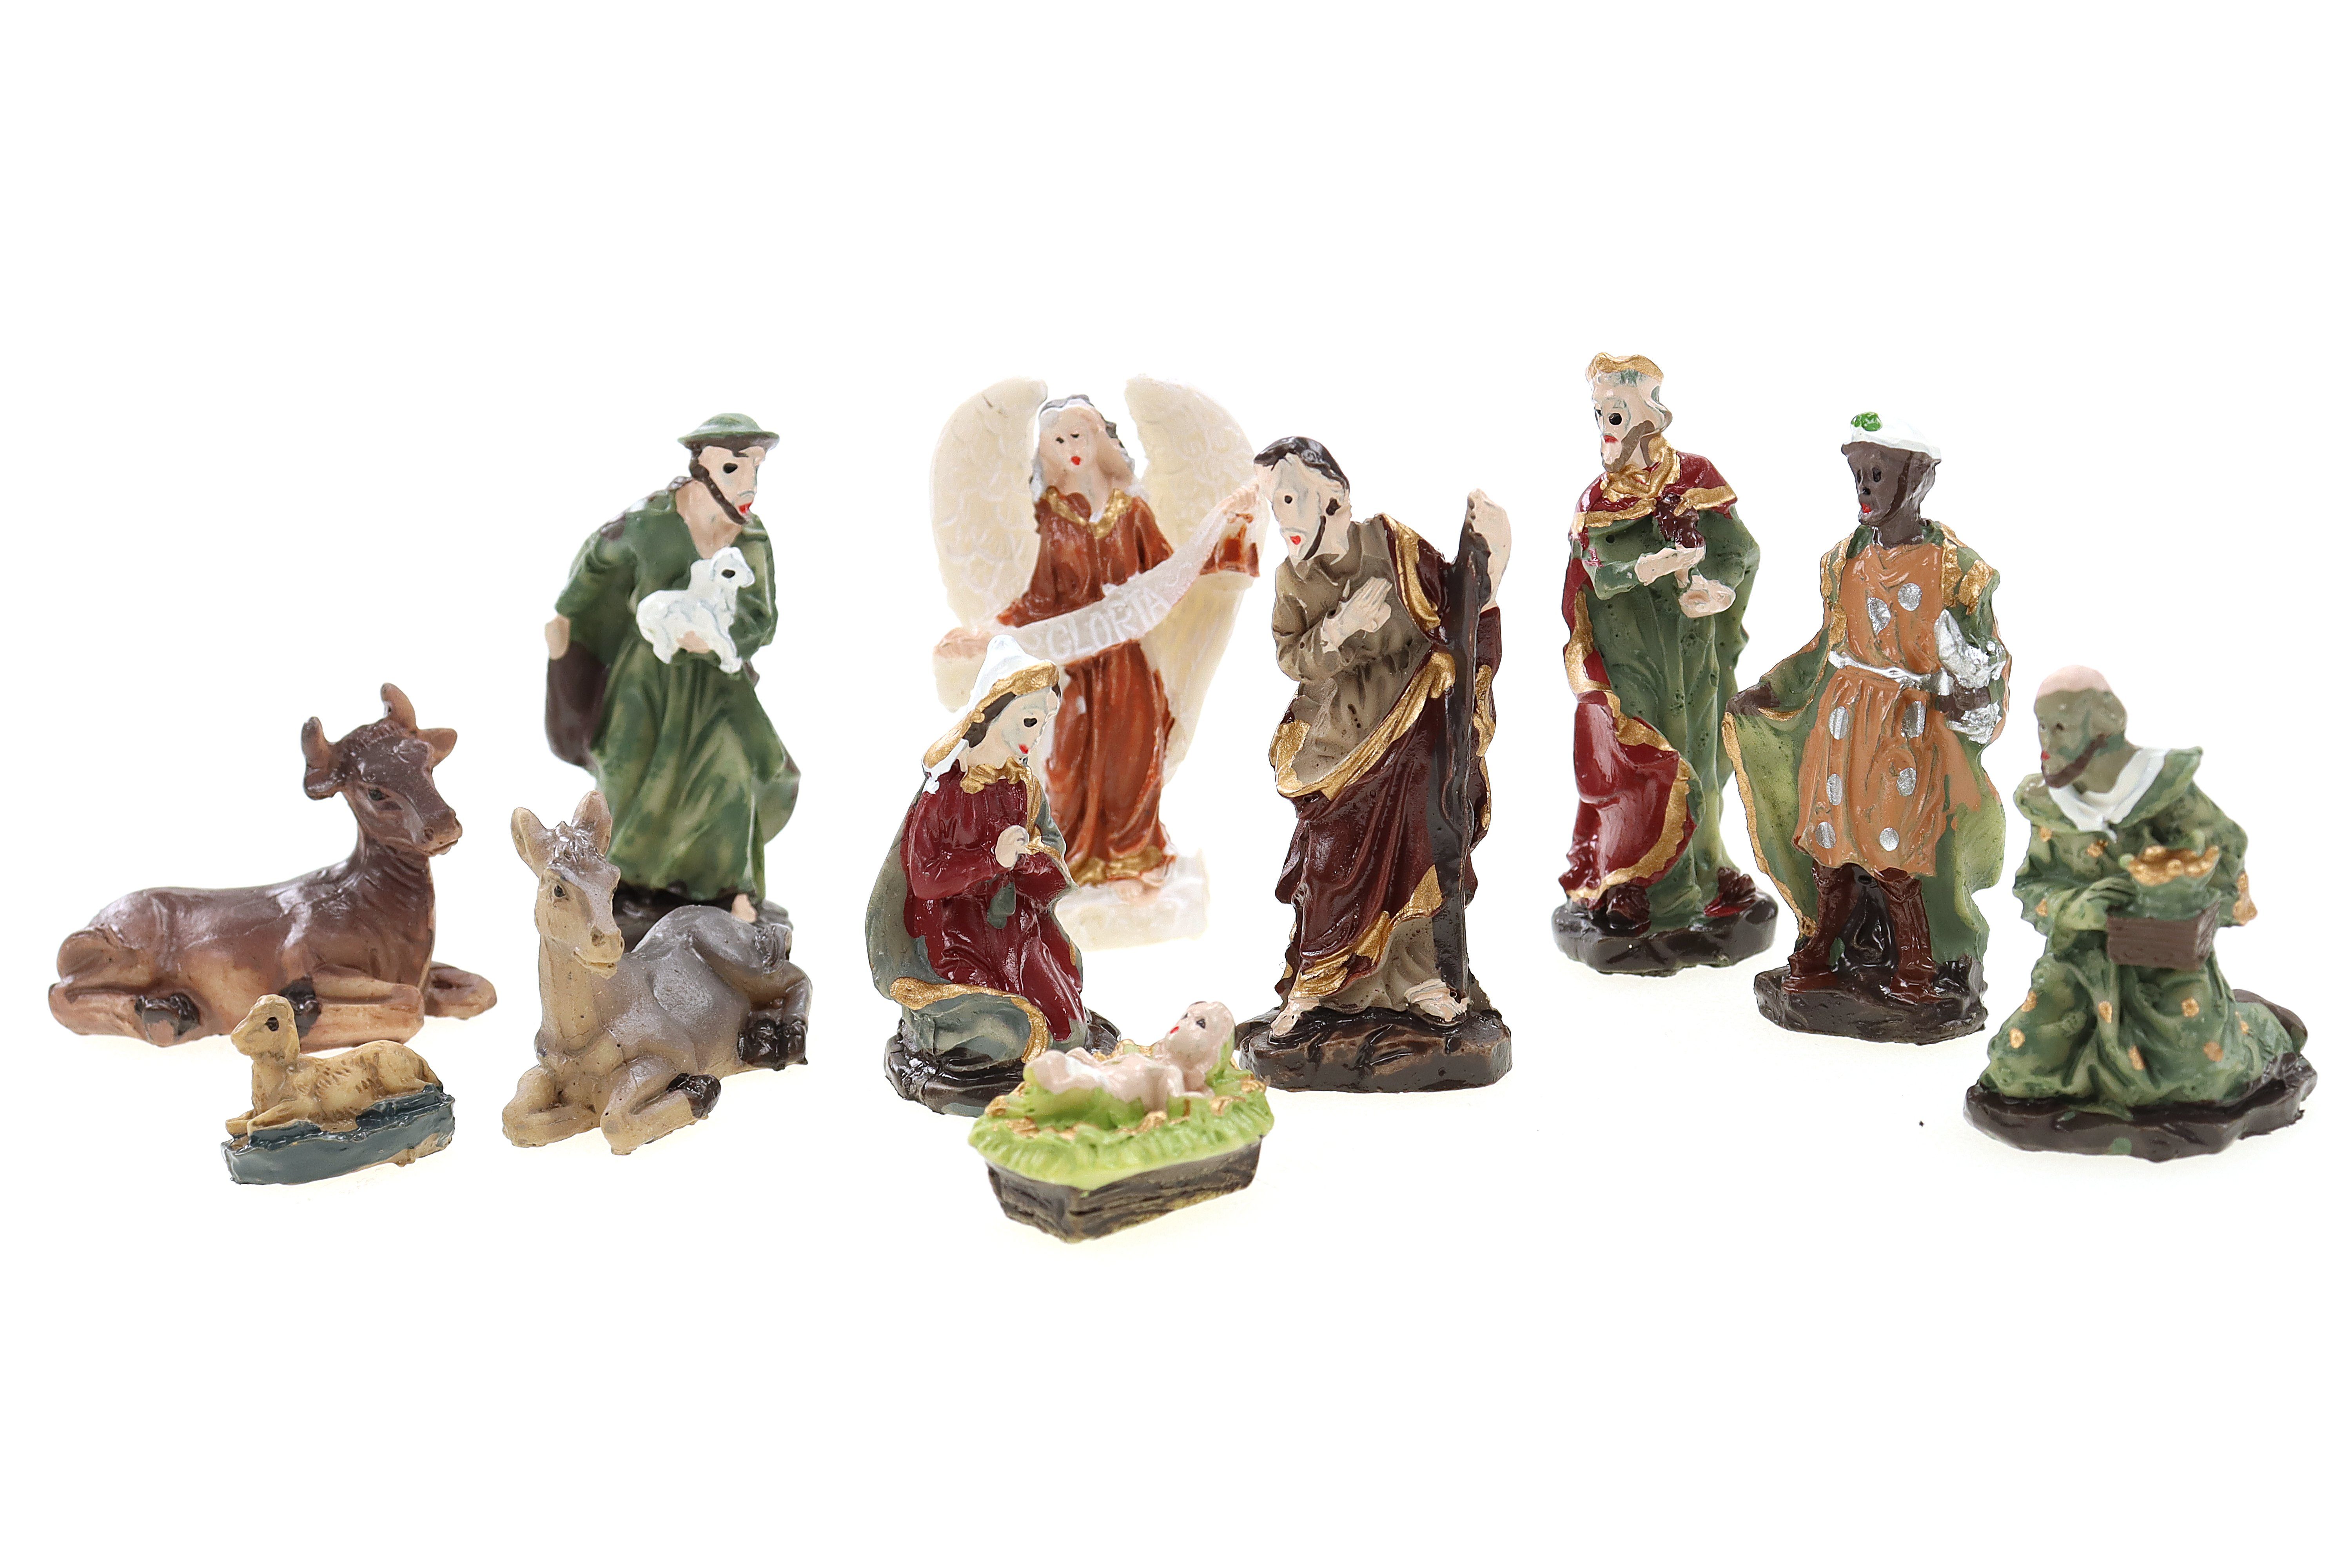 ELLUG Krippenfigur Mini Krippenfiguren Weihnachtskrippenfiguren Set 11-teilig H.:4,5cm in Plastikbox (11 St)